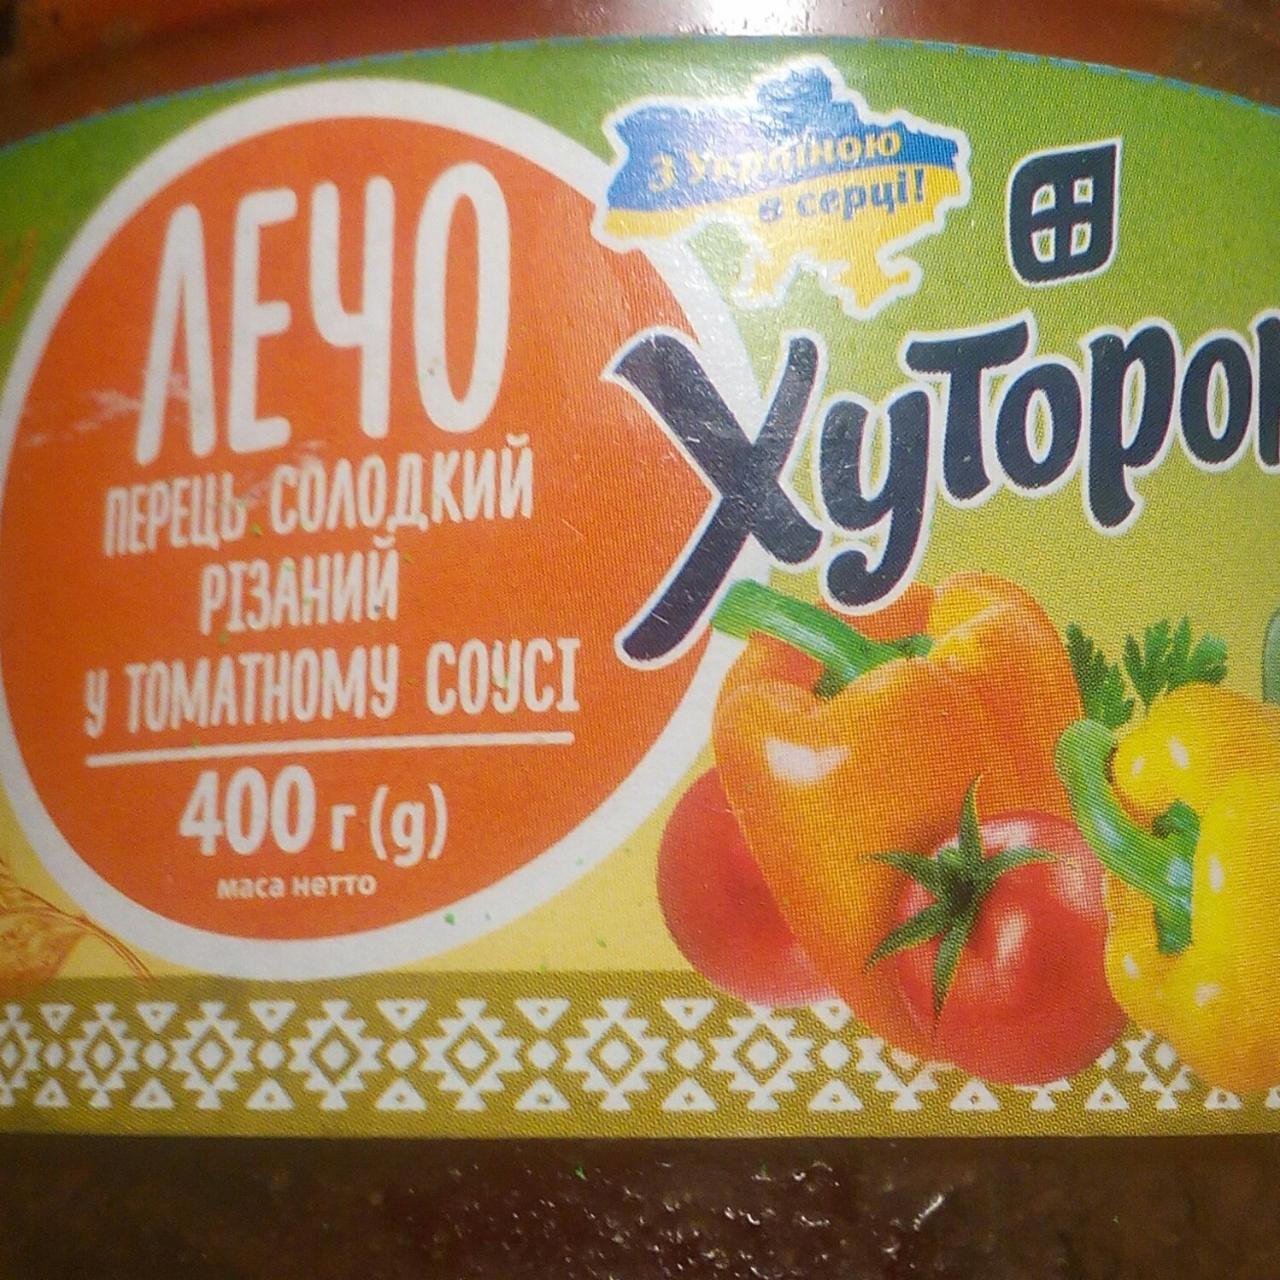 Фото - Лечо Перец сладкий резаный в томатном соусе Хуторок